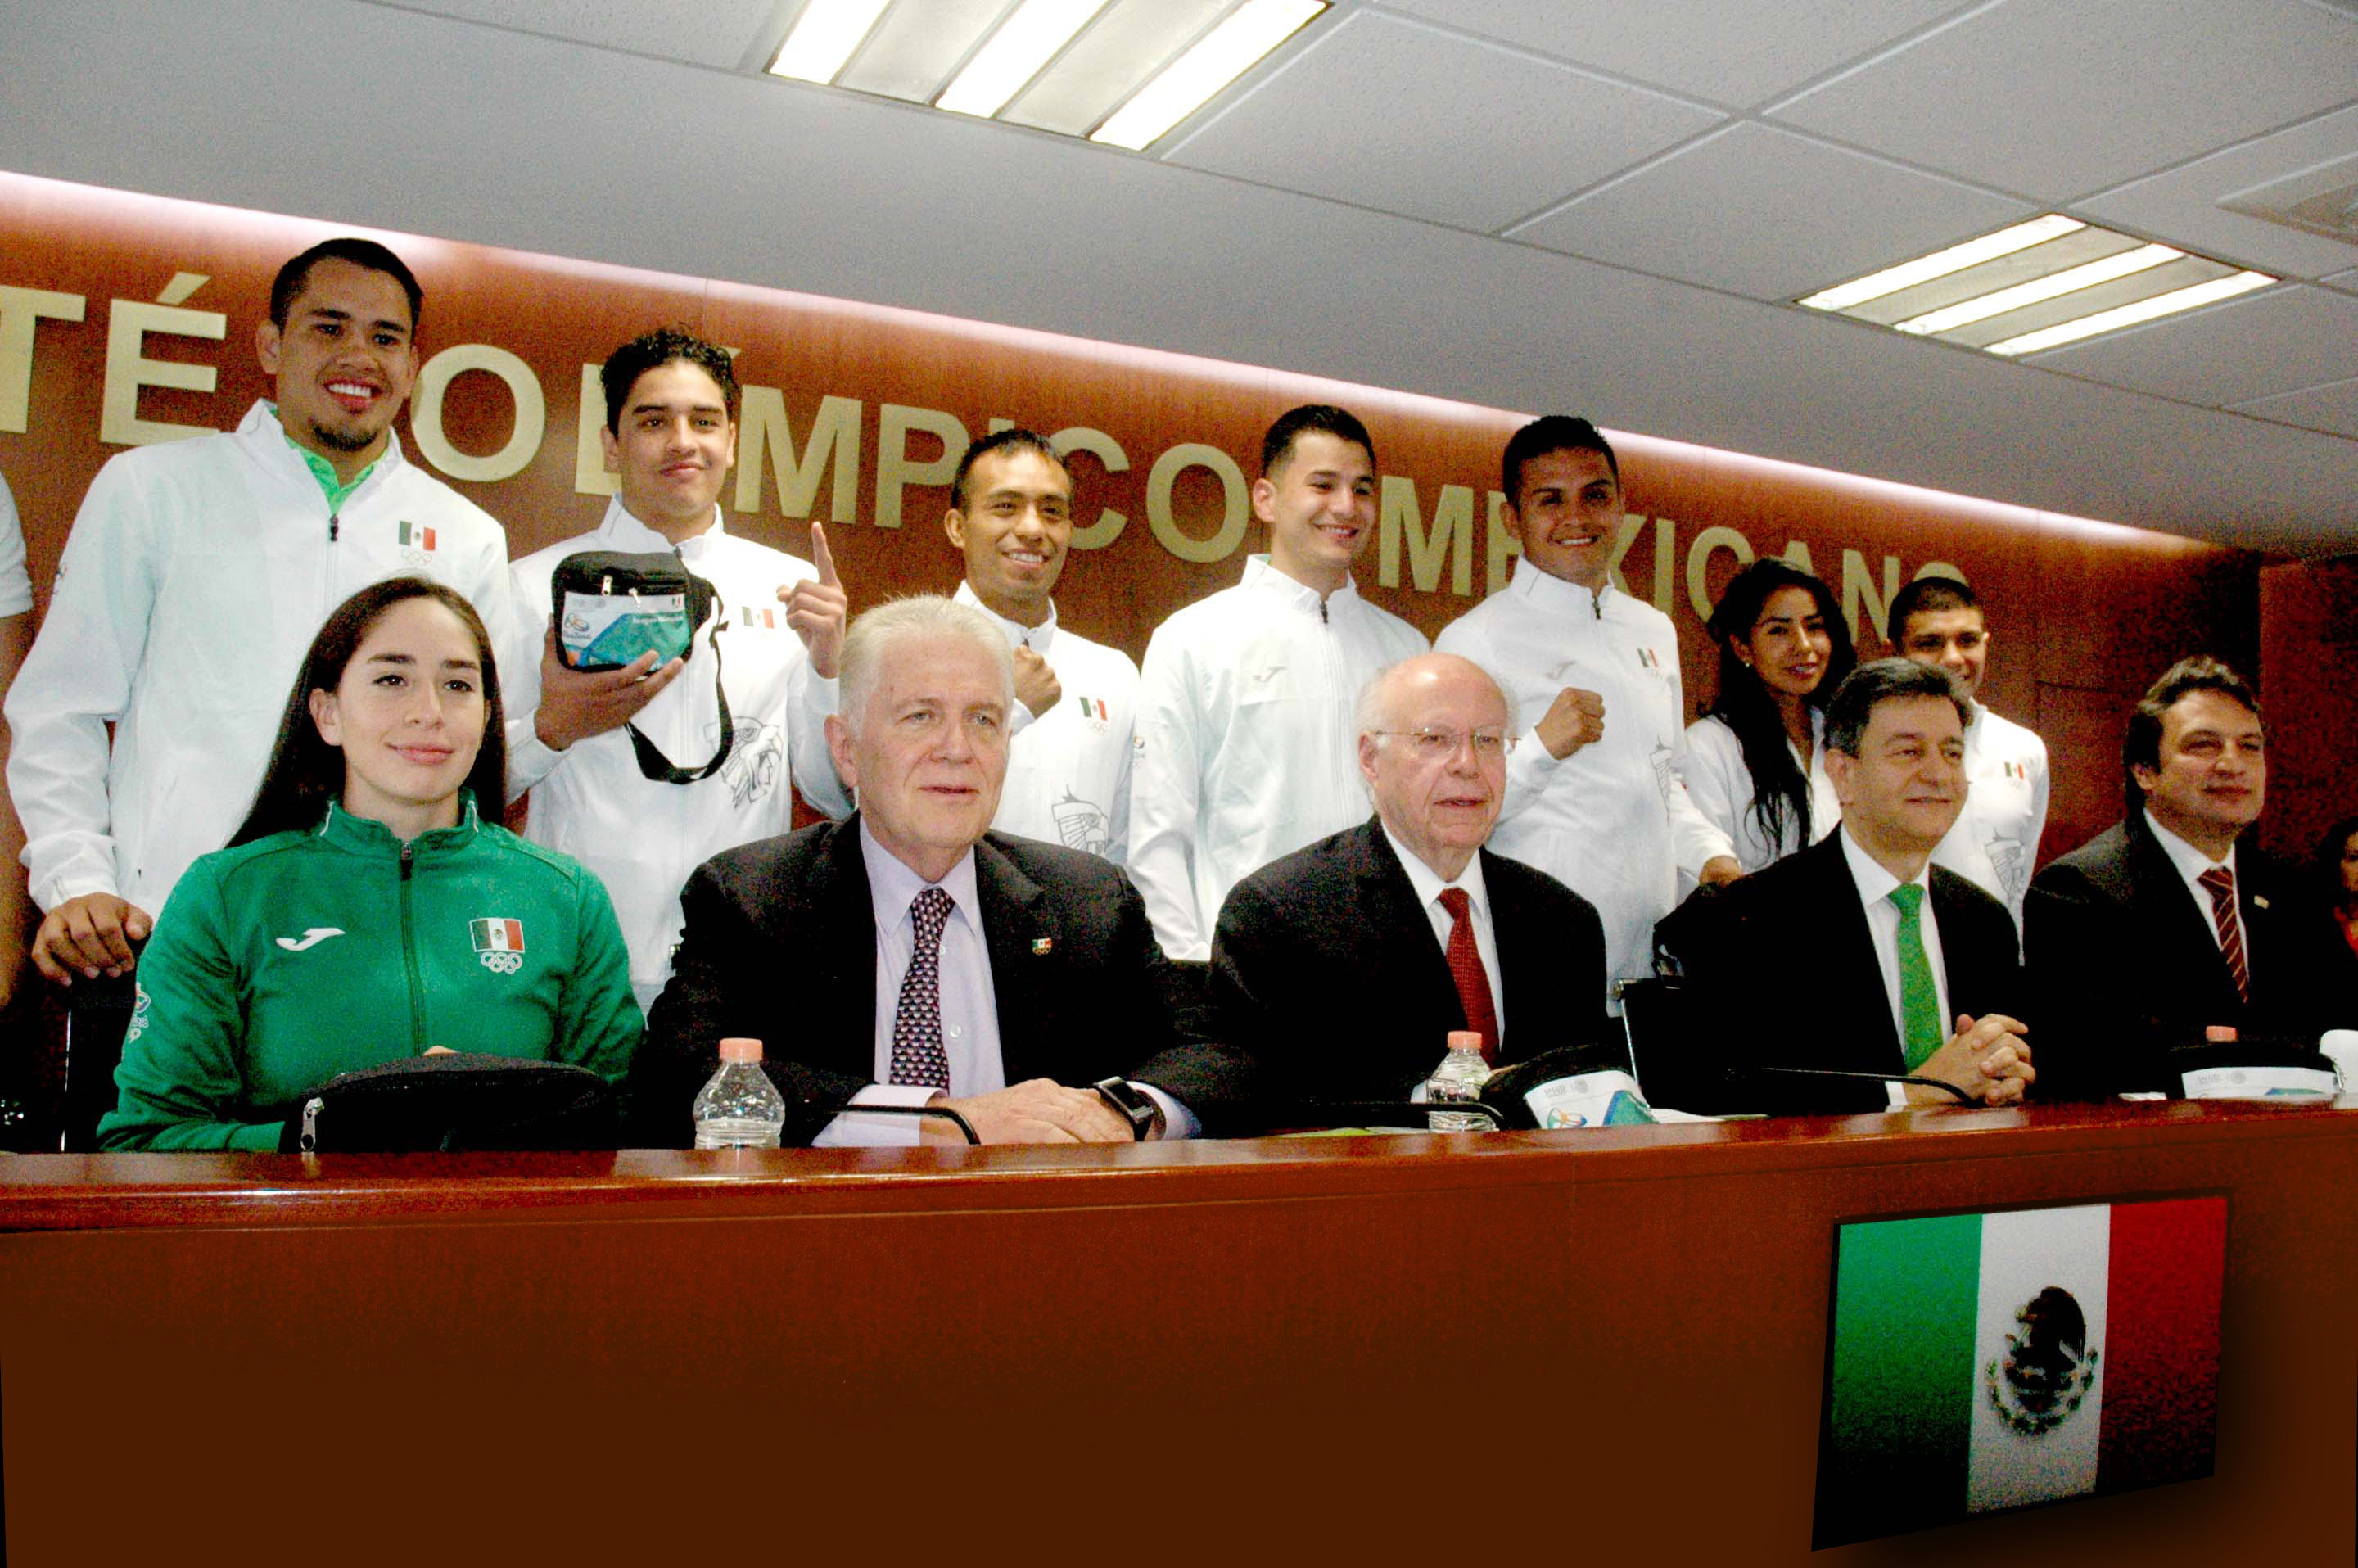 Refuerzan acciones preventivas en delegación mexicana que acude a Juegos Olímpicos de Río 2016